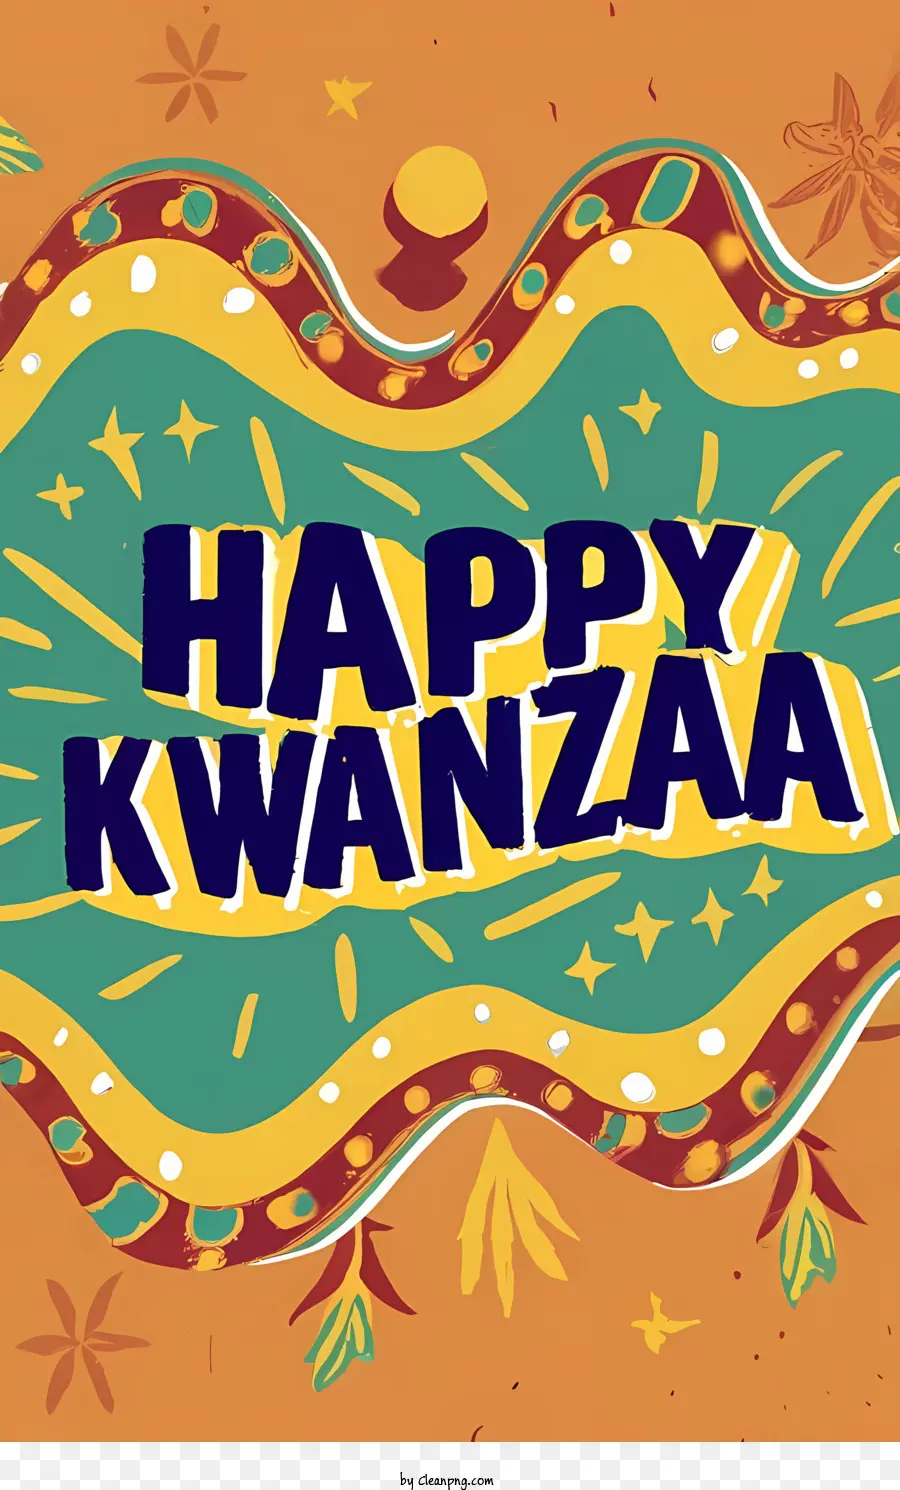 Chúc mừng kwanzaa vui vẻ Kwanzaa lễ kỷ niệm đầy màu sắc - 